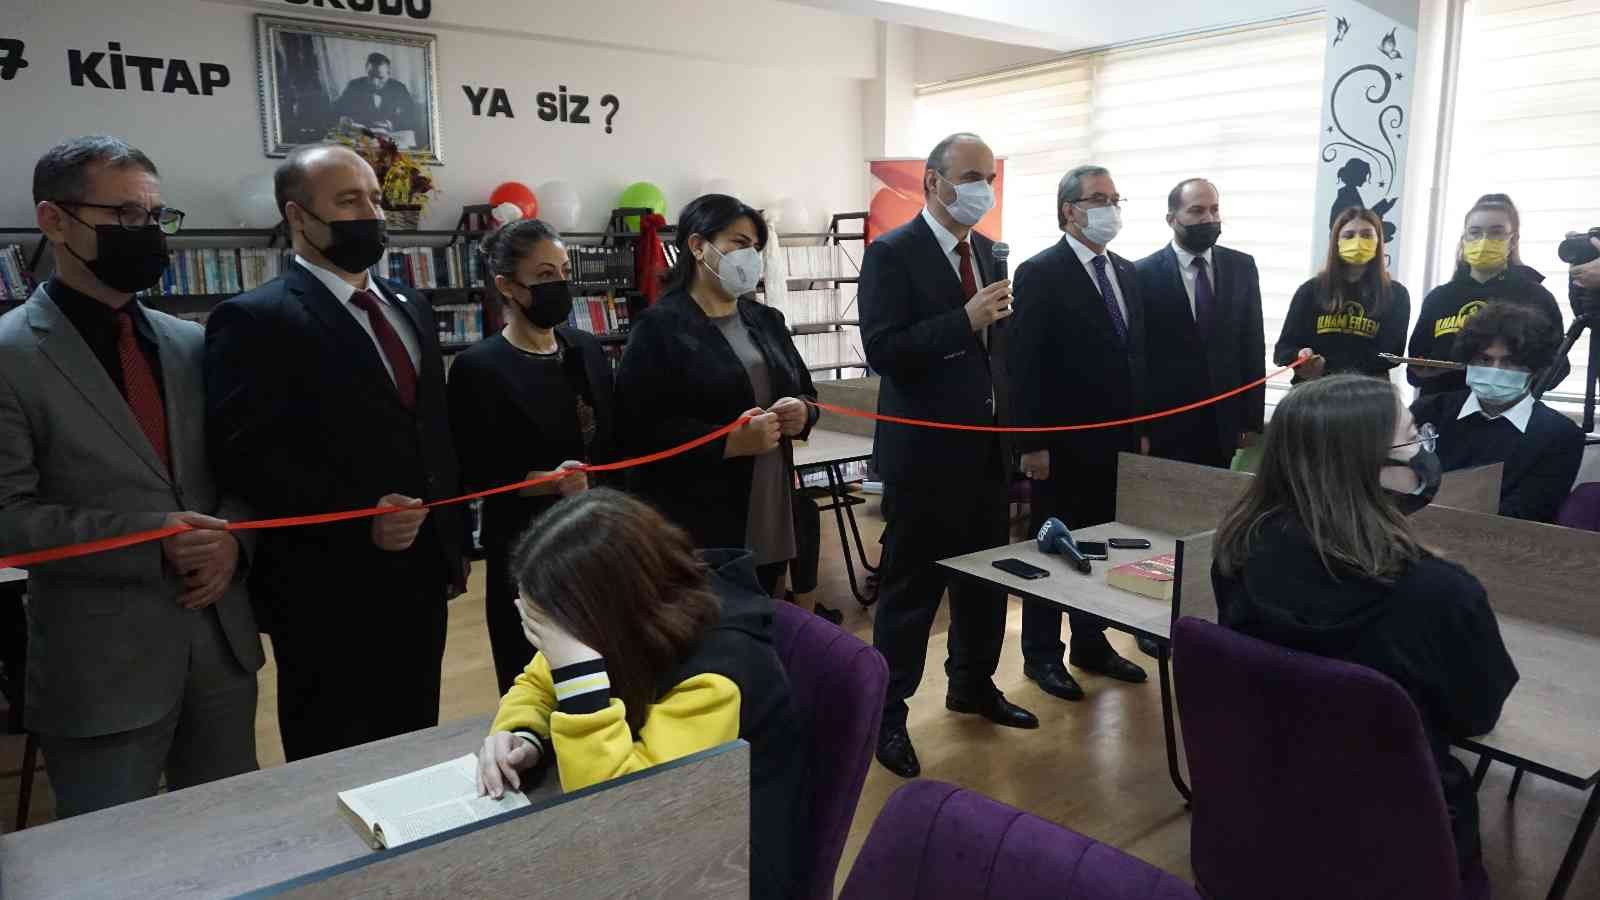 Edirne’de Kütüphanesiz Okul Kalmayacak projesi toplu açılış töreni #edirne